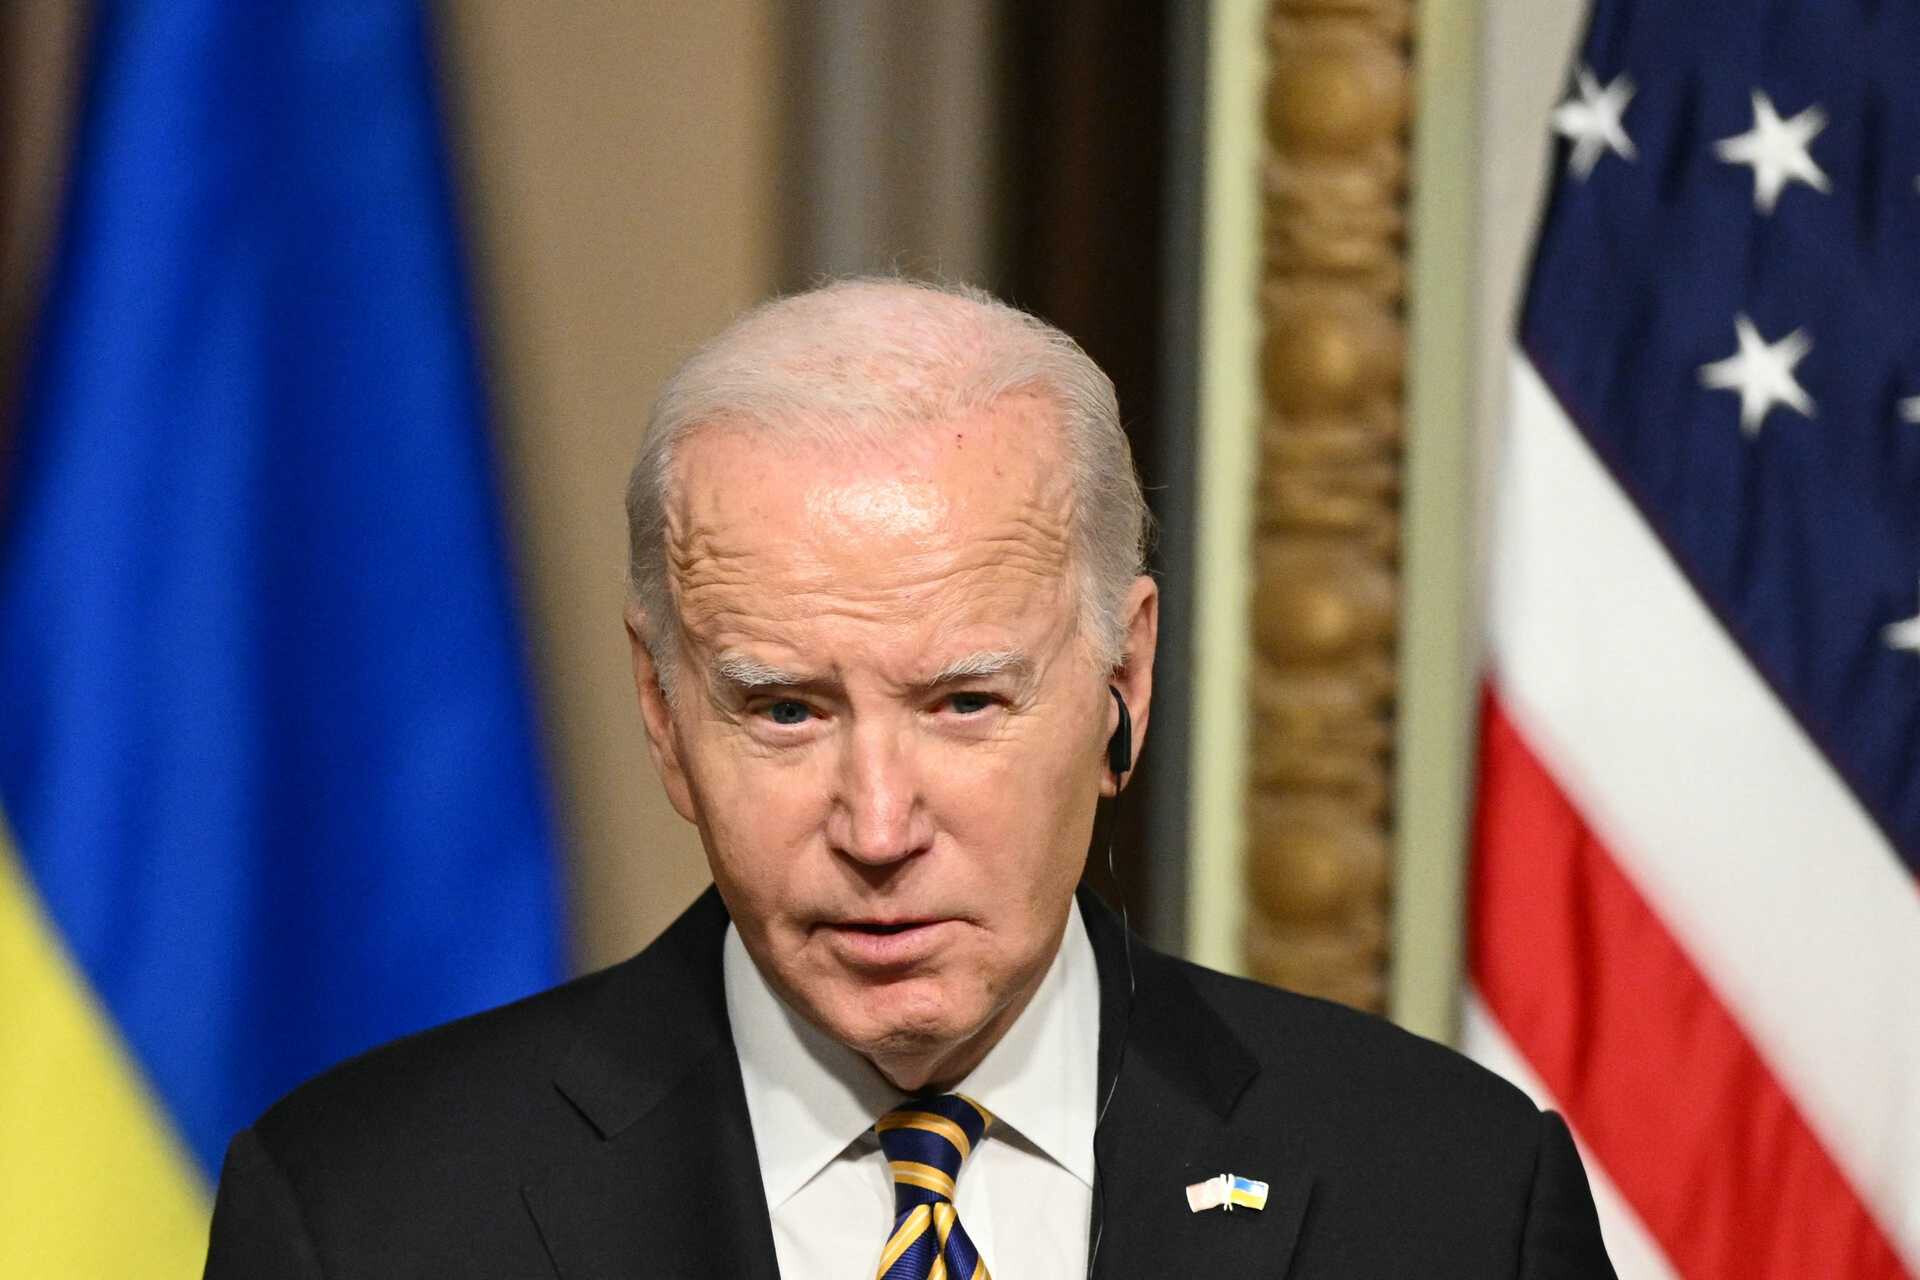 Biden retuvo y difundió intencionalmente documentos clasificados después de Obama